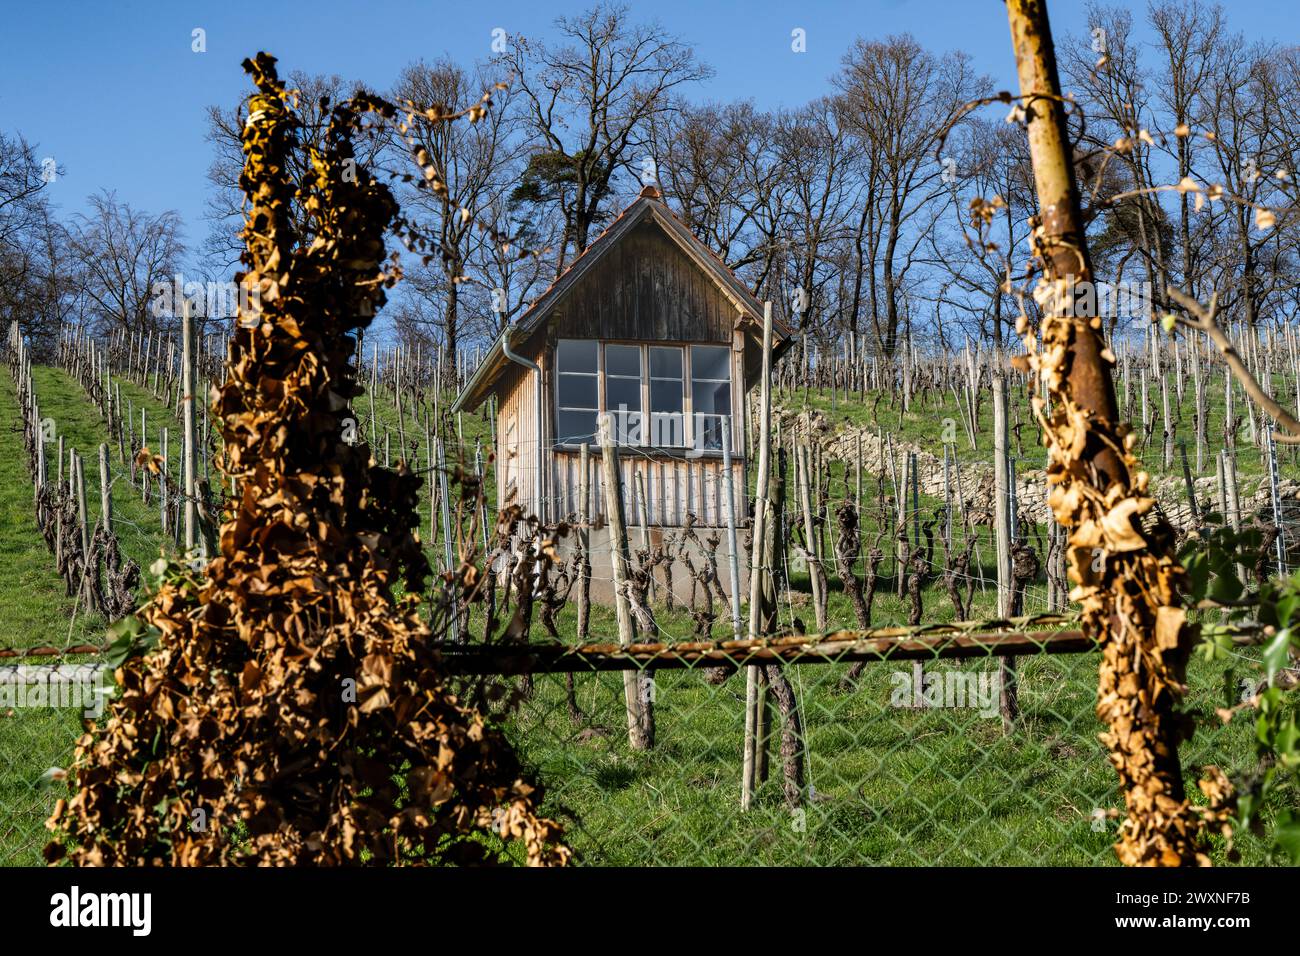 Vigneto in primavera - con vecchia capanna e recinzione con foglie di vite essiccate. Foto Stock